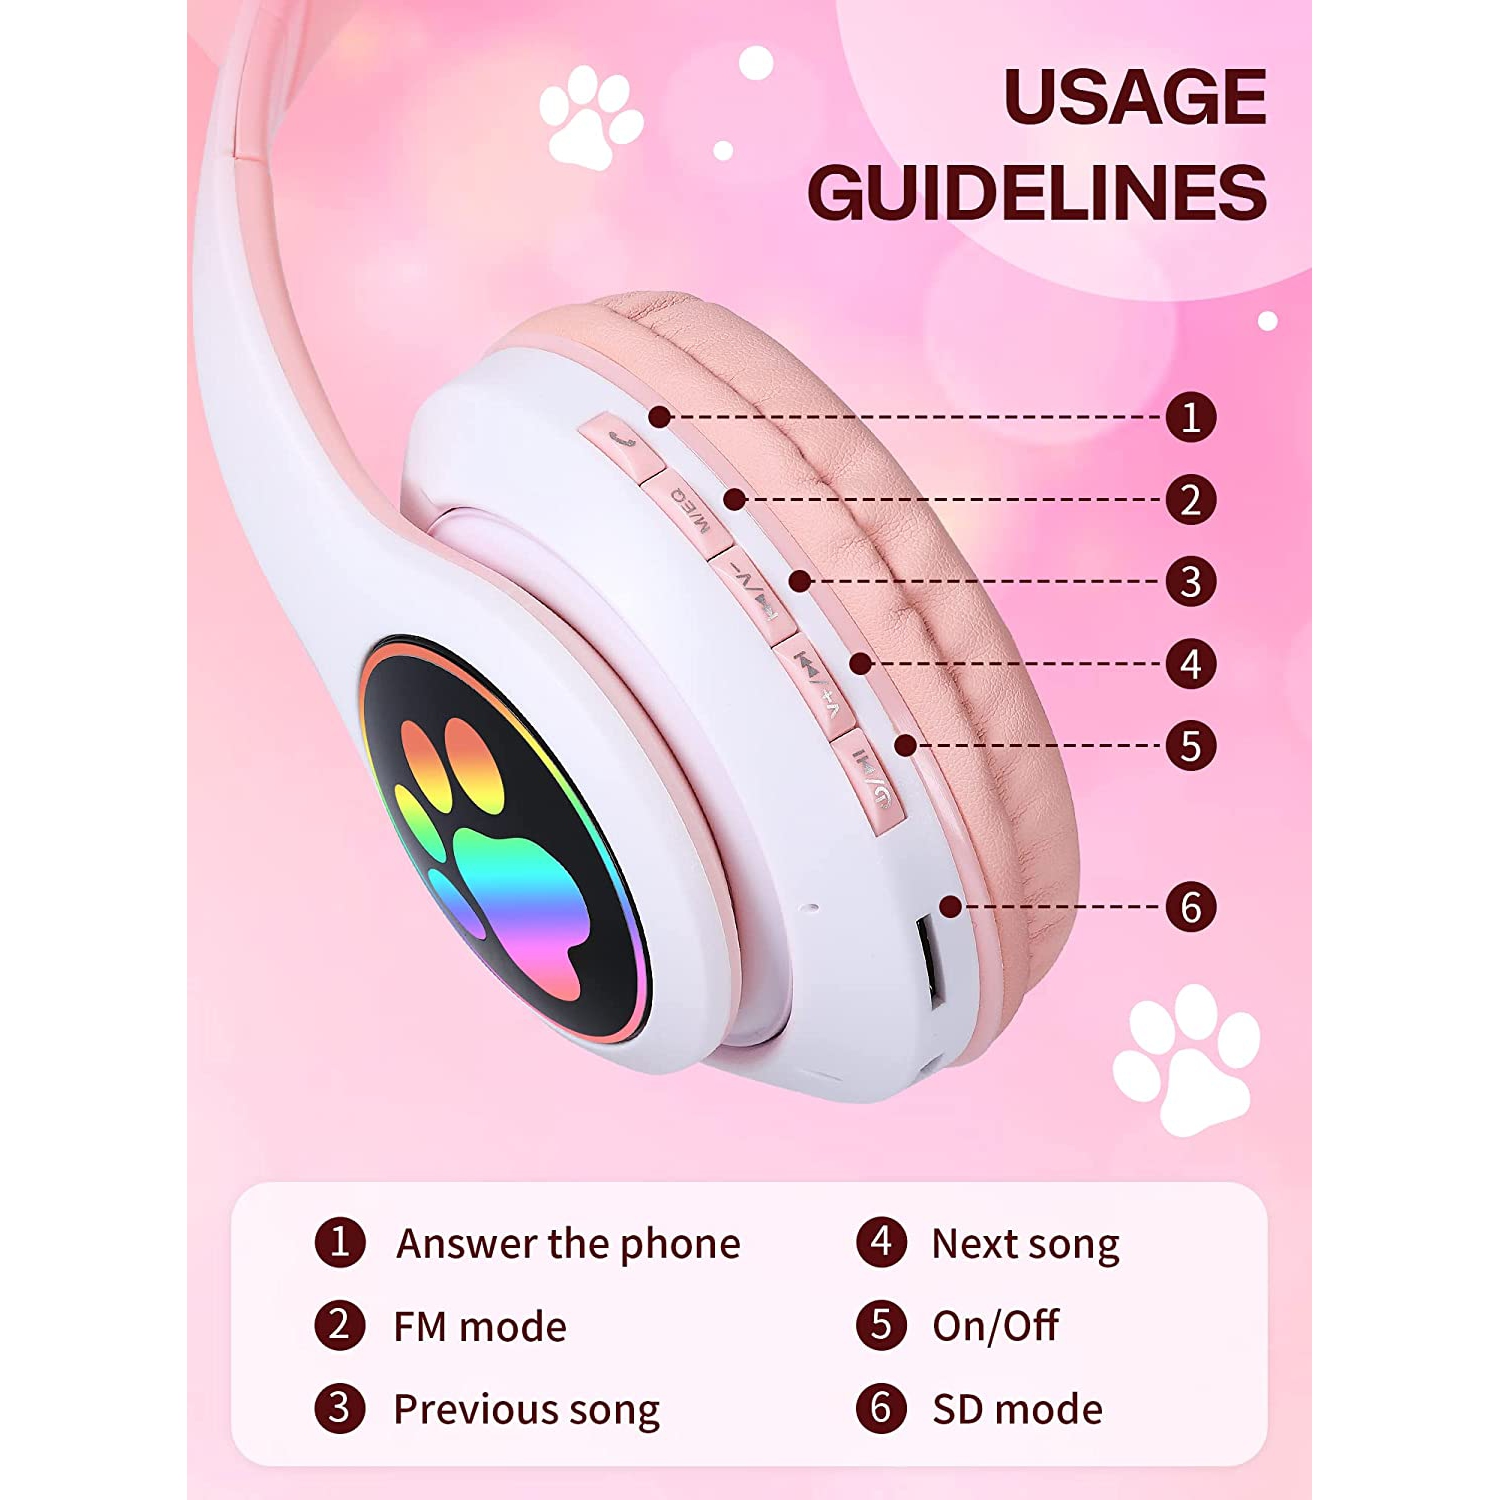 2021 tout nouveaux casques Bluetooth sans fil de bonne qualité pour enfant  Casque mignon pour fille avec lumière LED - Chine Écouteurs Cat Ears et  écouteurs Bluetooth prix